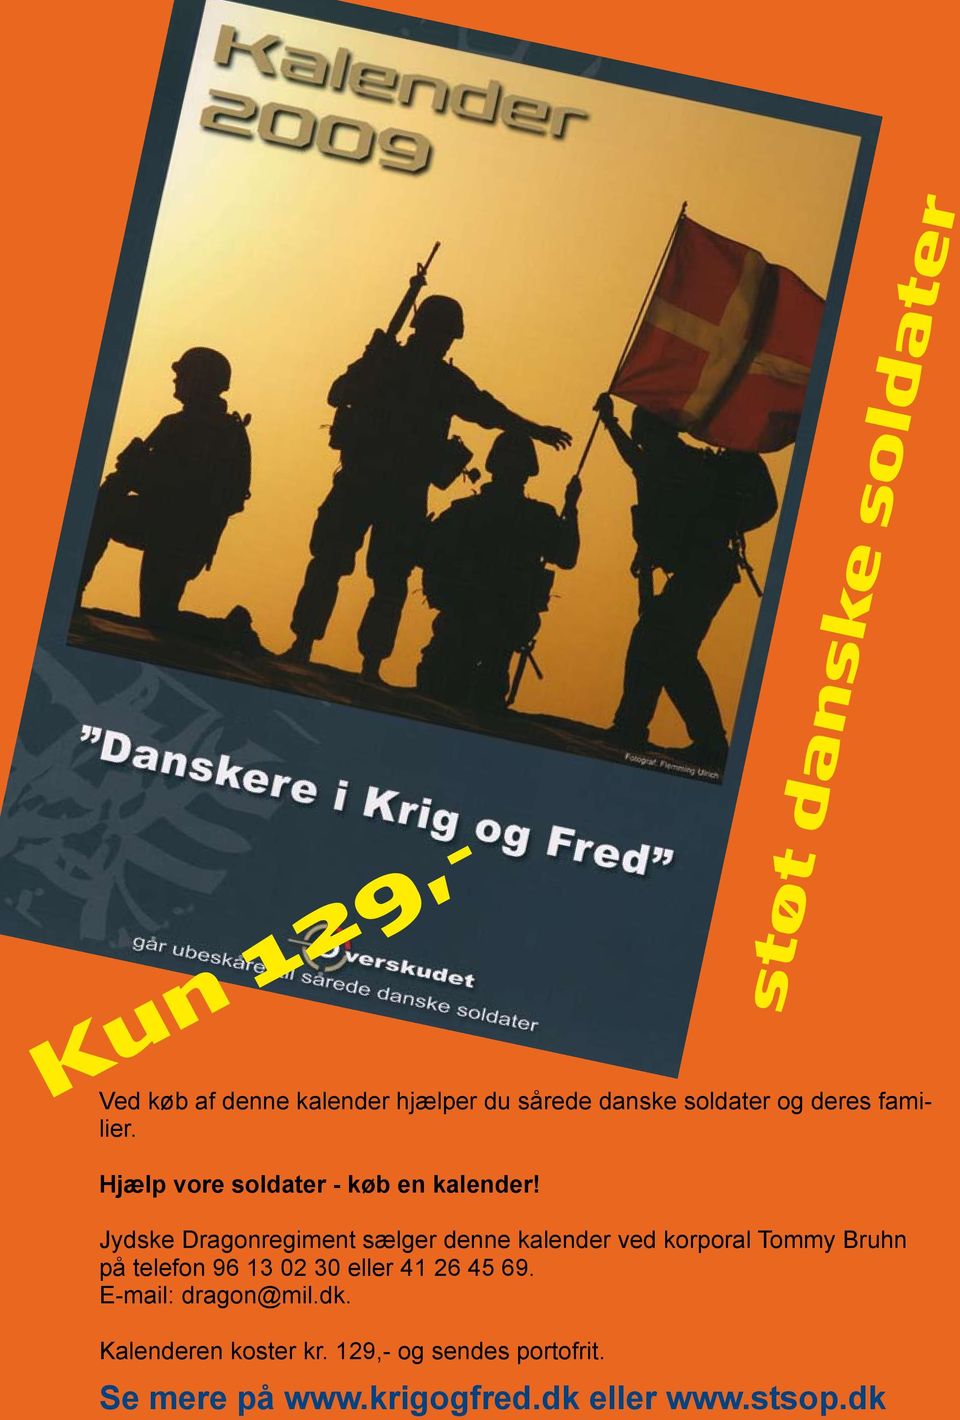 Jydske Dragonregiment sælger denne kalender ved korporal Tommy Bruhn på telefon 96 13 02 30